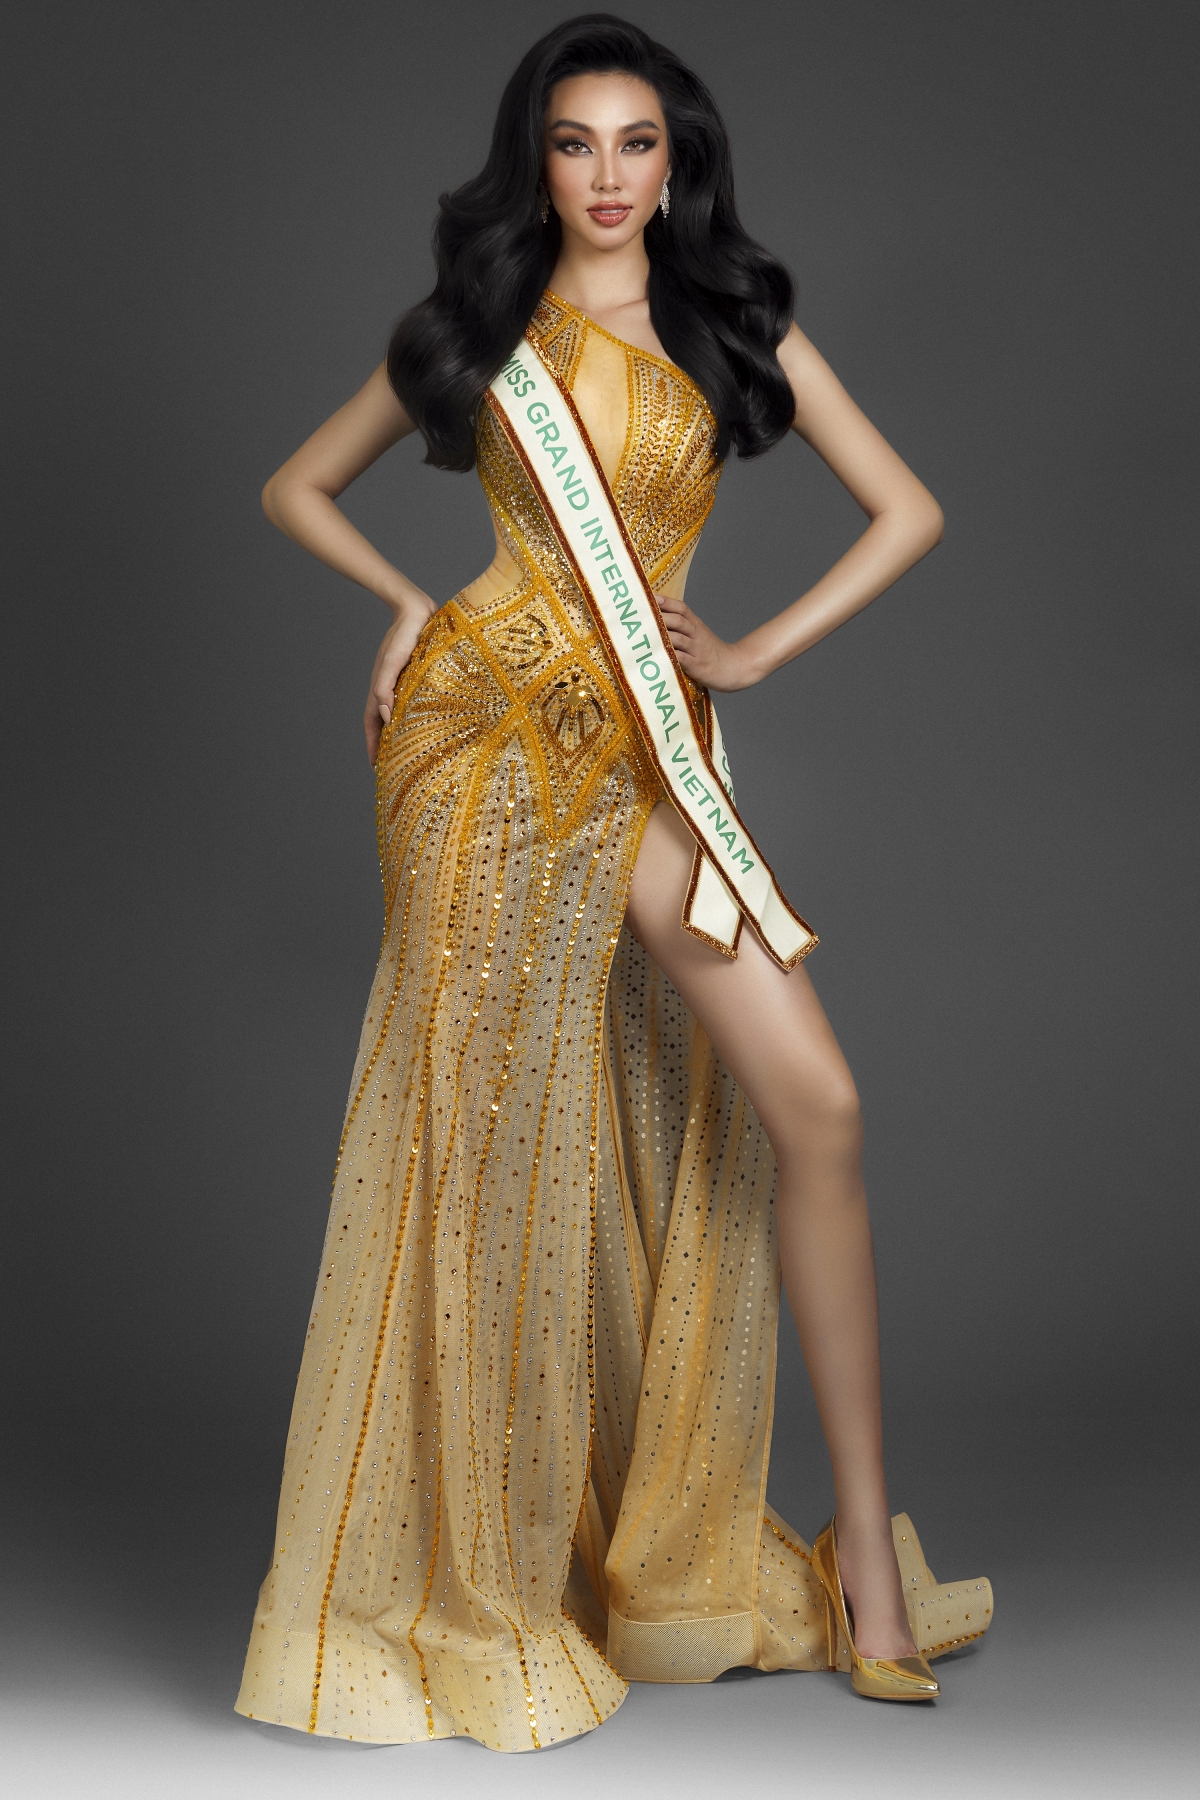 Nguyễn Thúc Thuỳ Tiên đại diện Việt Nam dự thi Miss Grand International 2021 - Ảnh 3.